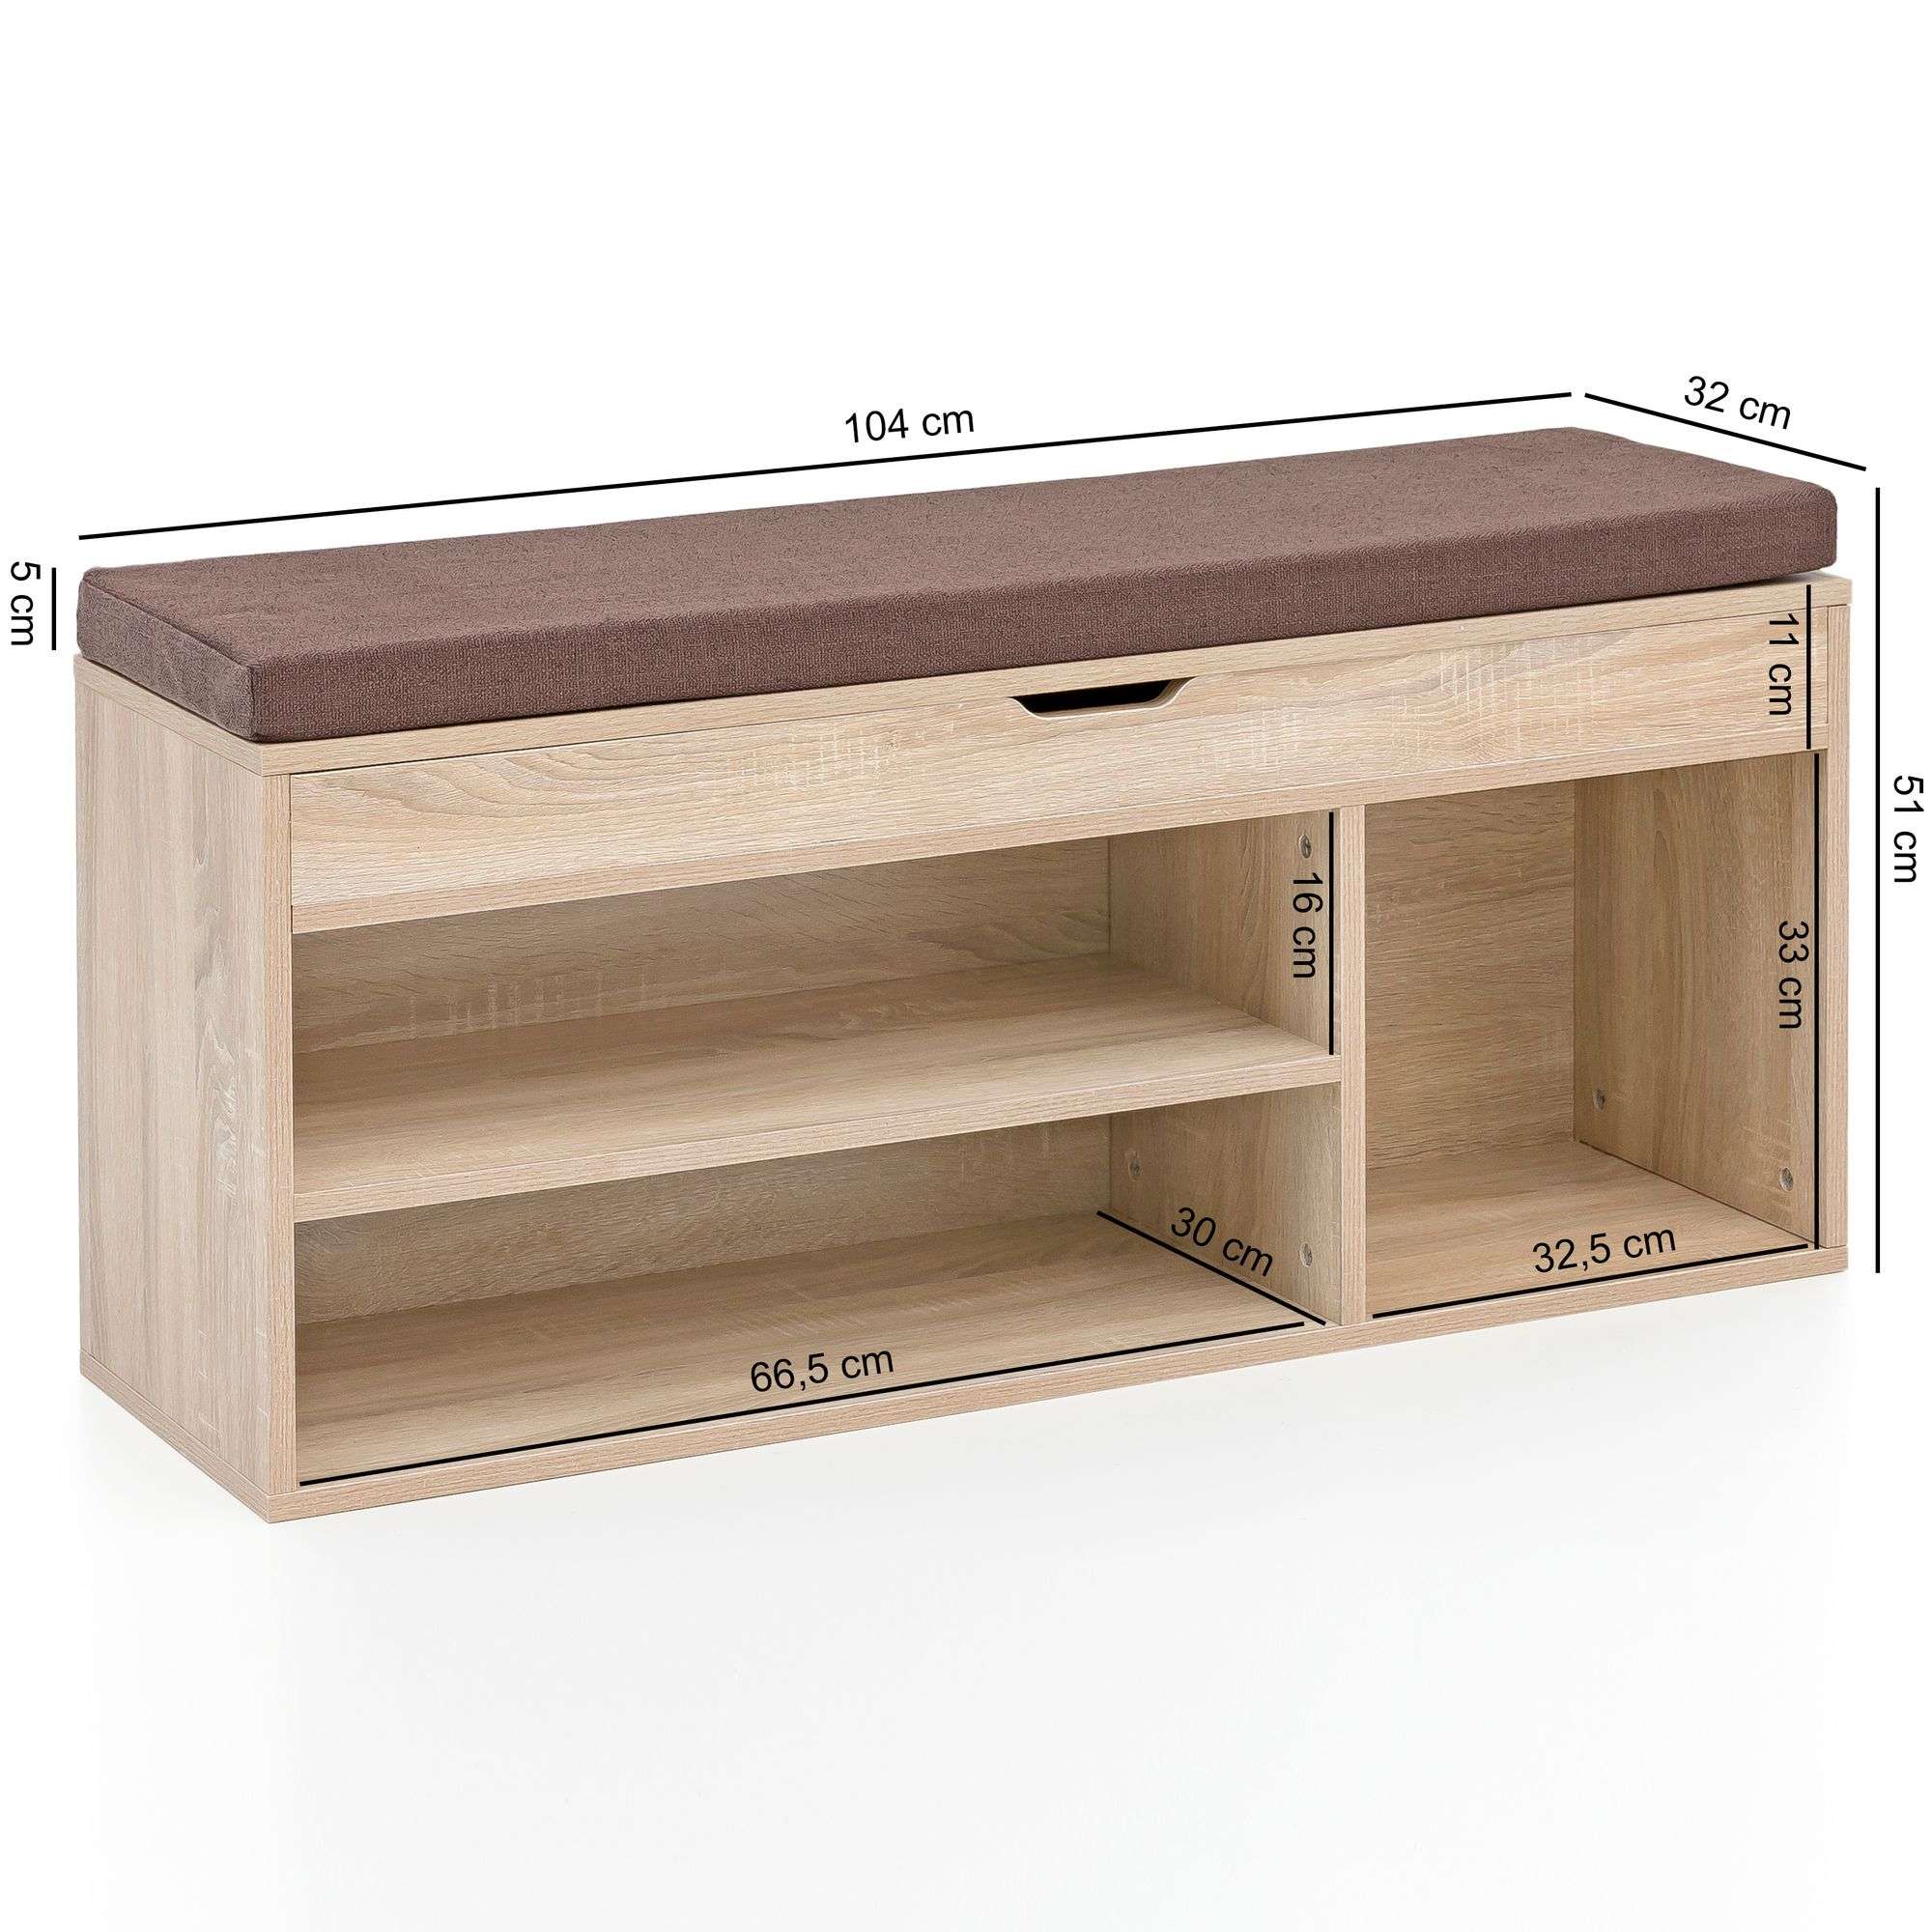 Holz Schuhbank Sitzfläche Garderoben-Bank kaufen mit 104x51x32